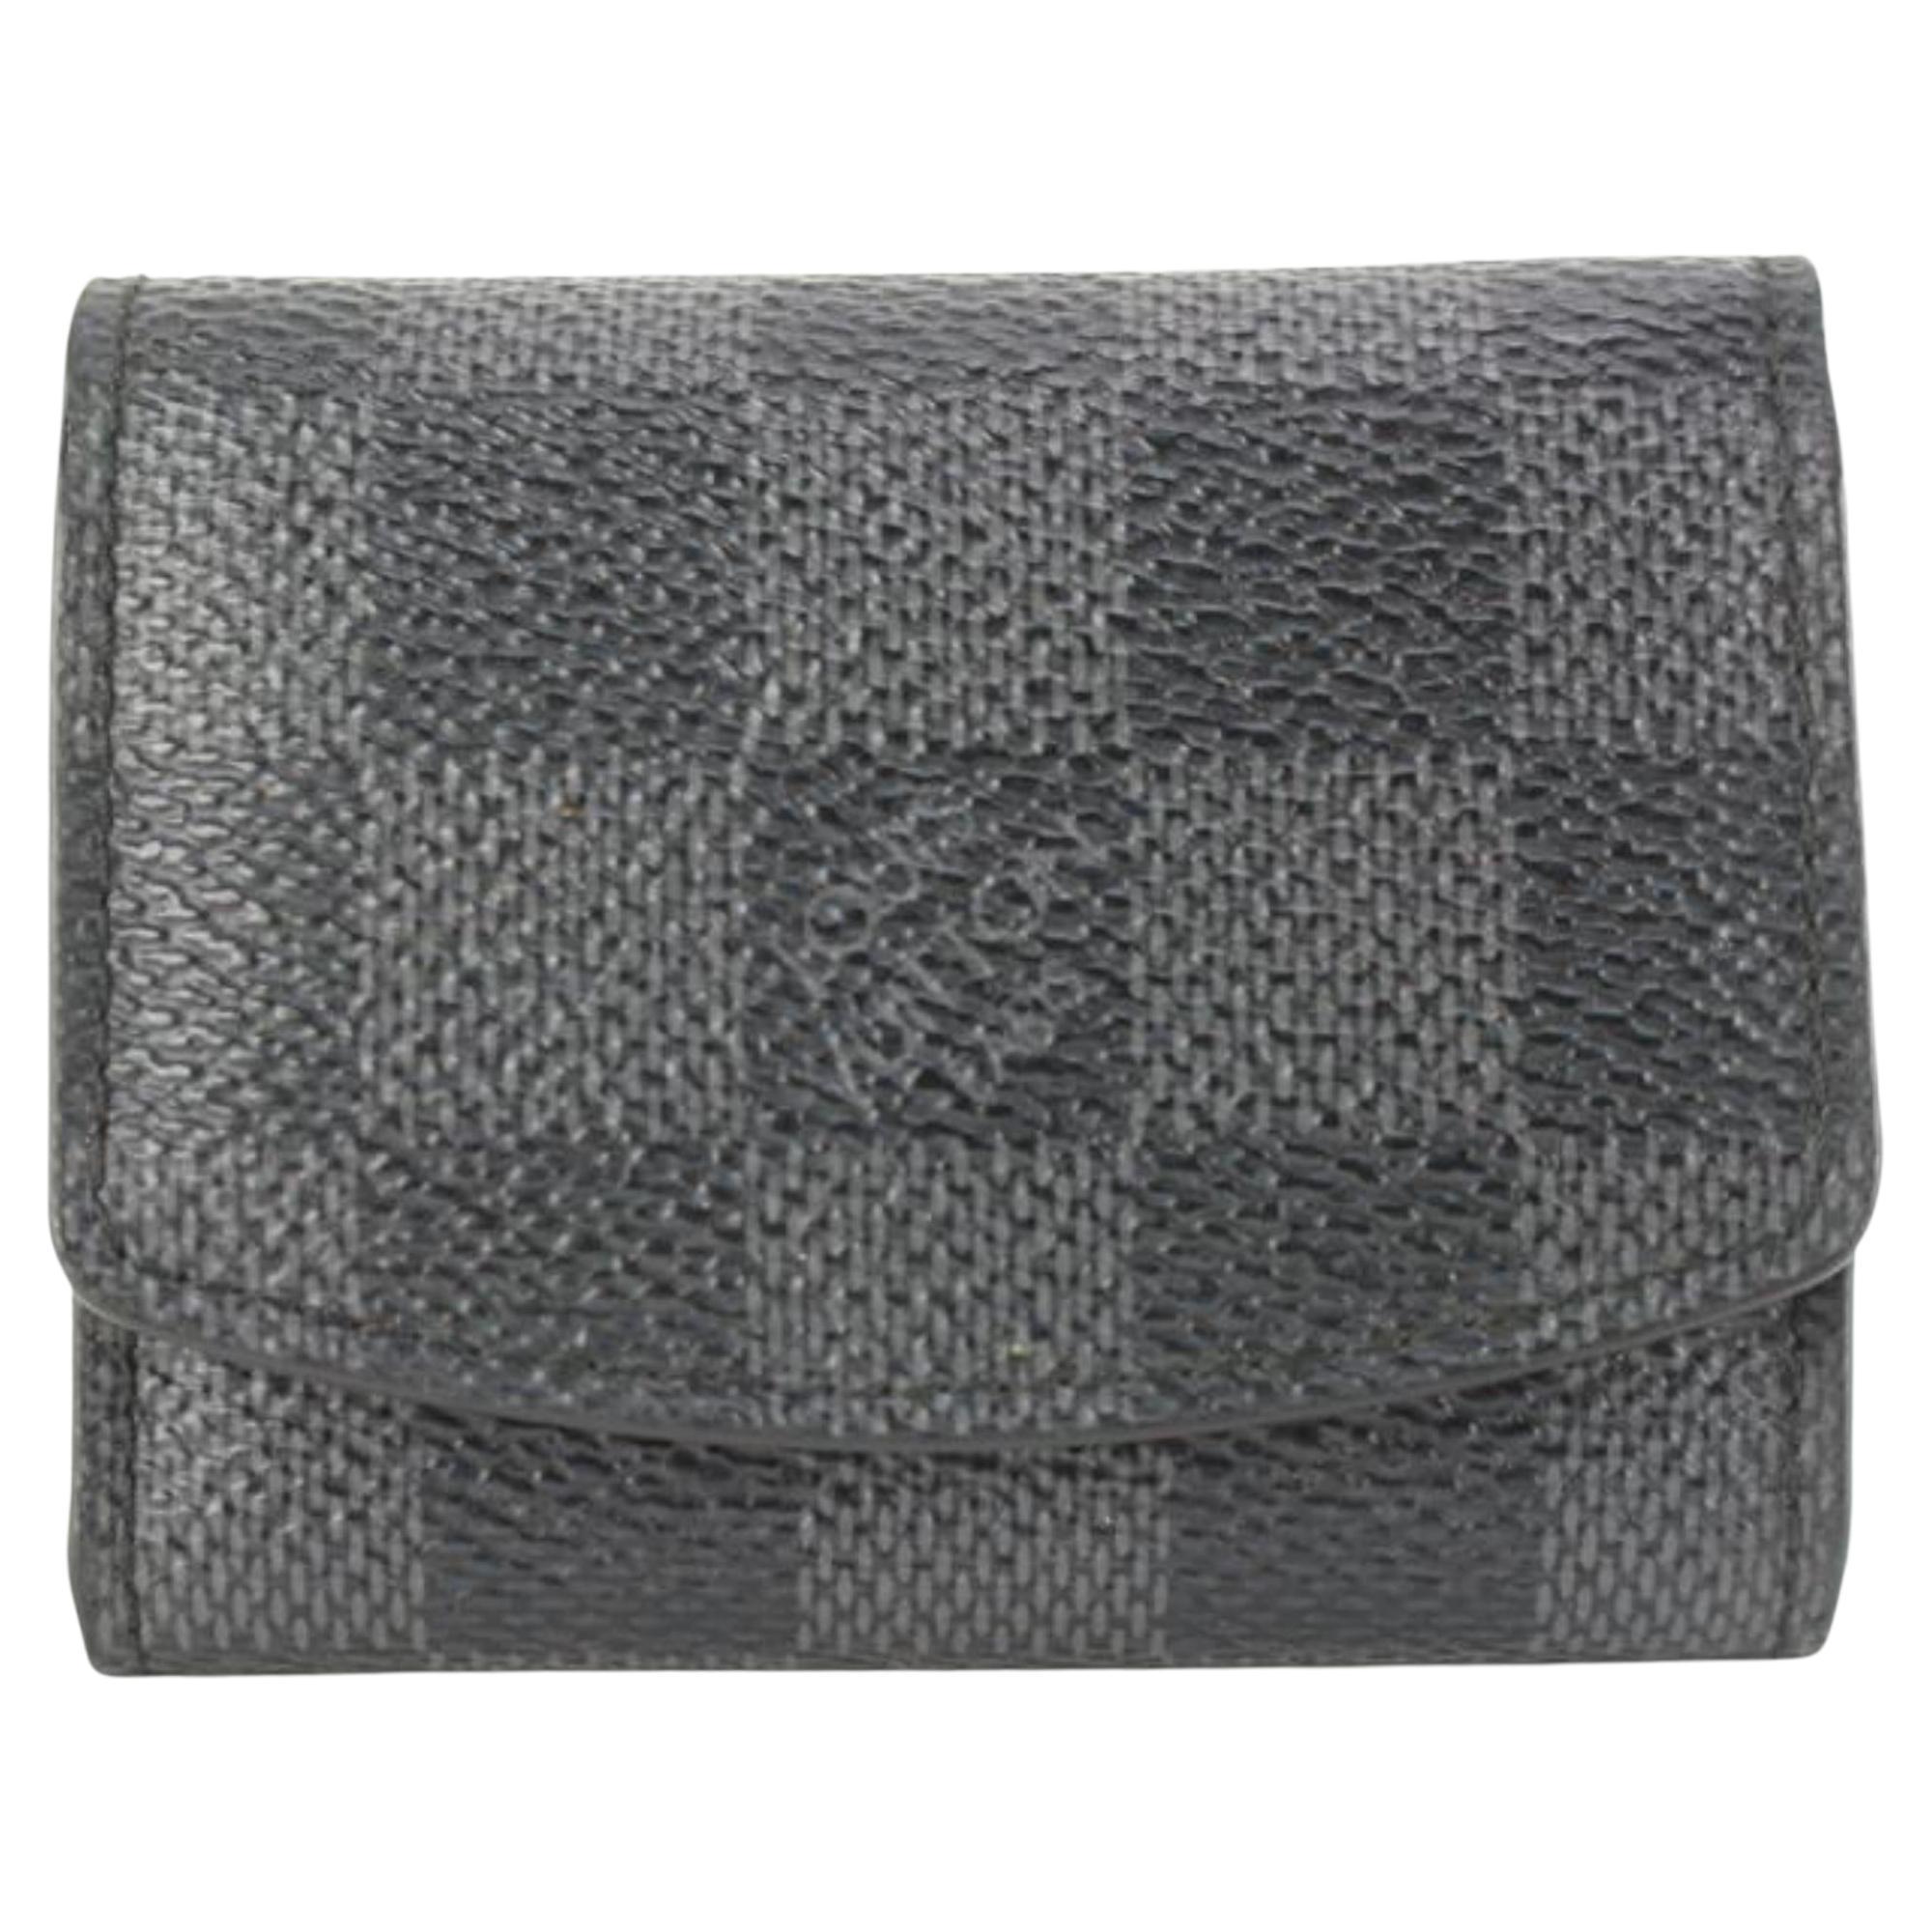 Louis Vuitton Damier Graphite Cufflink Pouch Case Holder 96lk616s For Sale